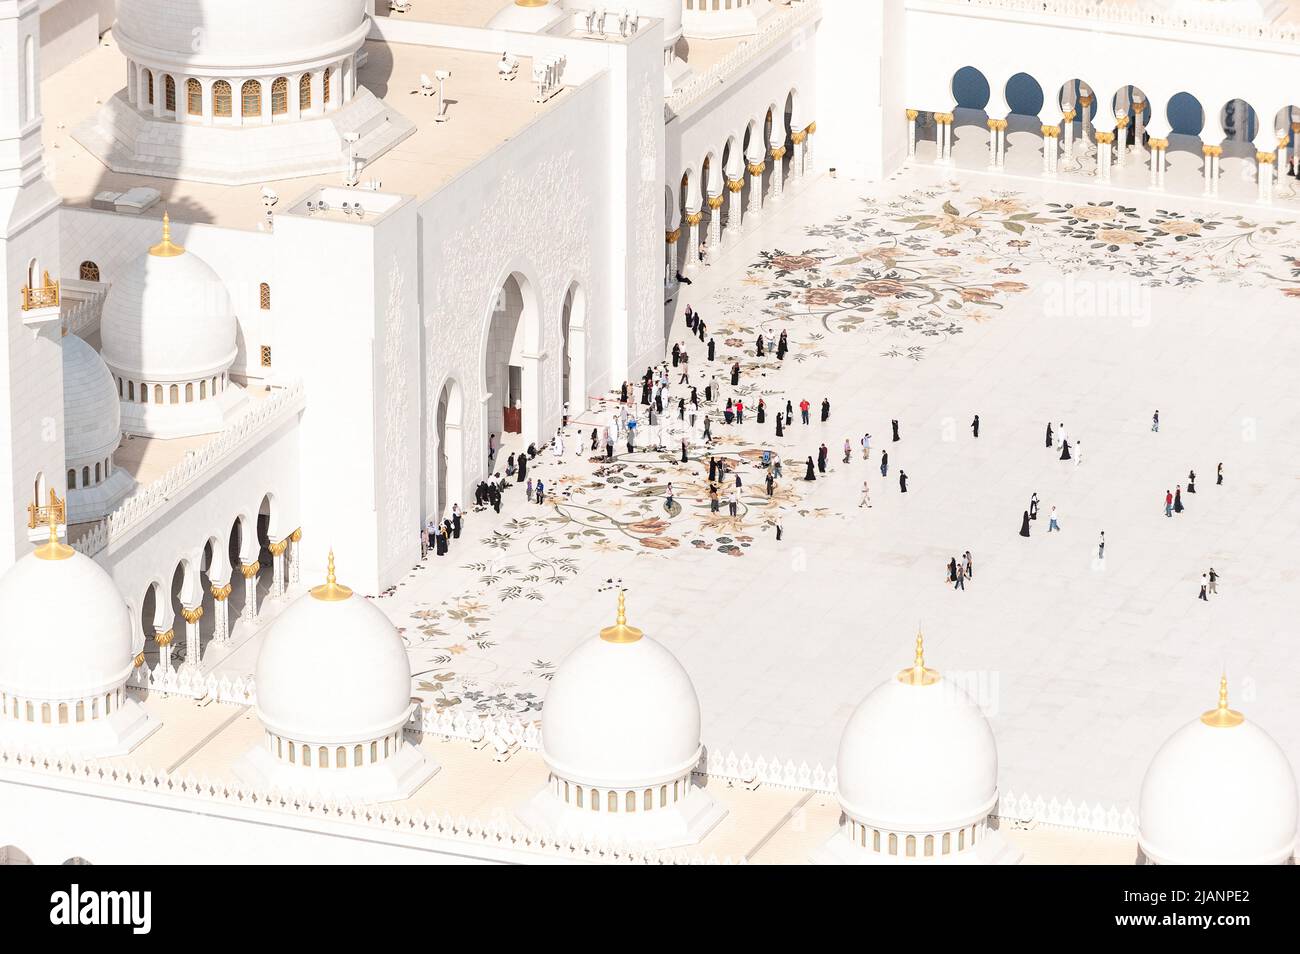 Foto aeree esclusive di Abu Dhabi e della Grande Moschea dello Sceicco Zayed. Prospettiva unica della più grande moschea degli Emirati Arabi Uniti. Turismo religioso. Islam. Foto Stock